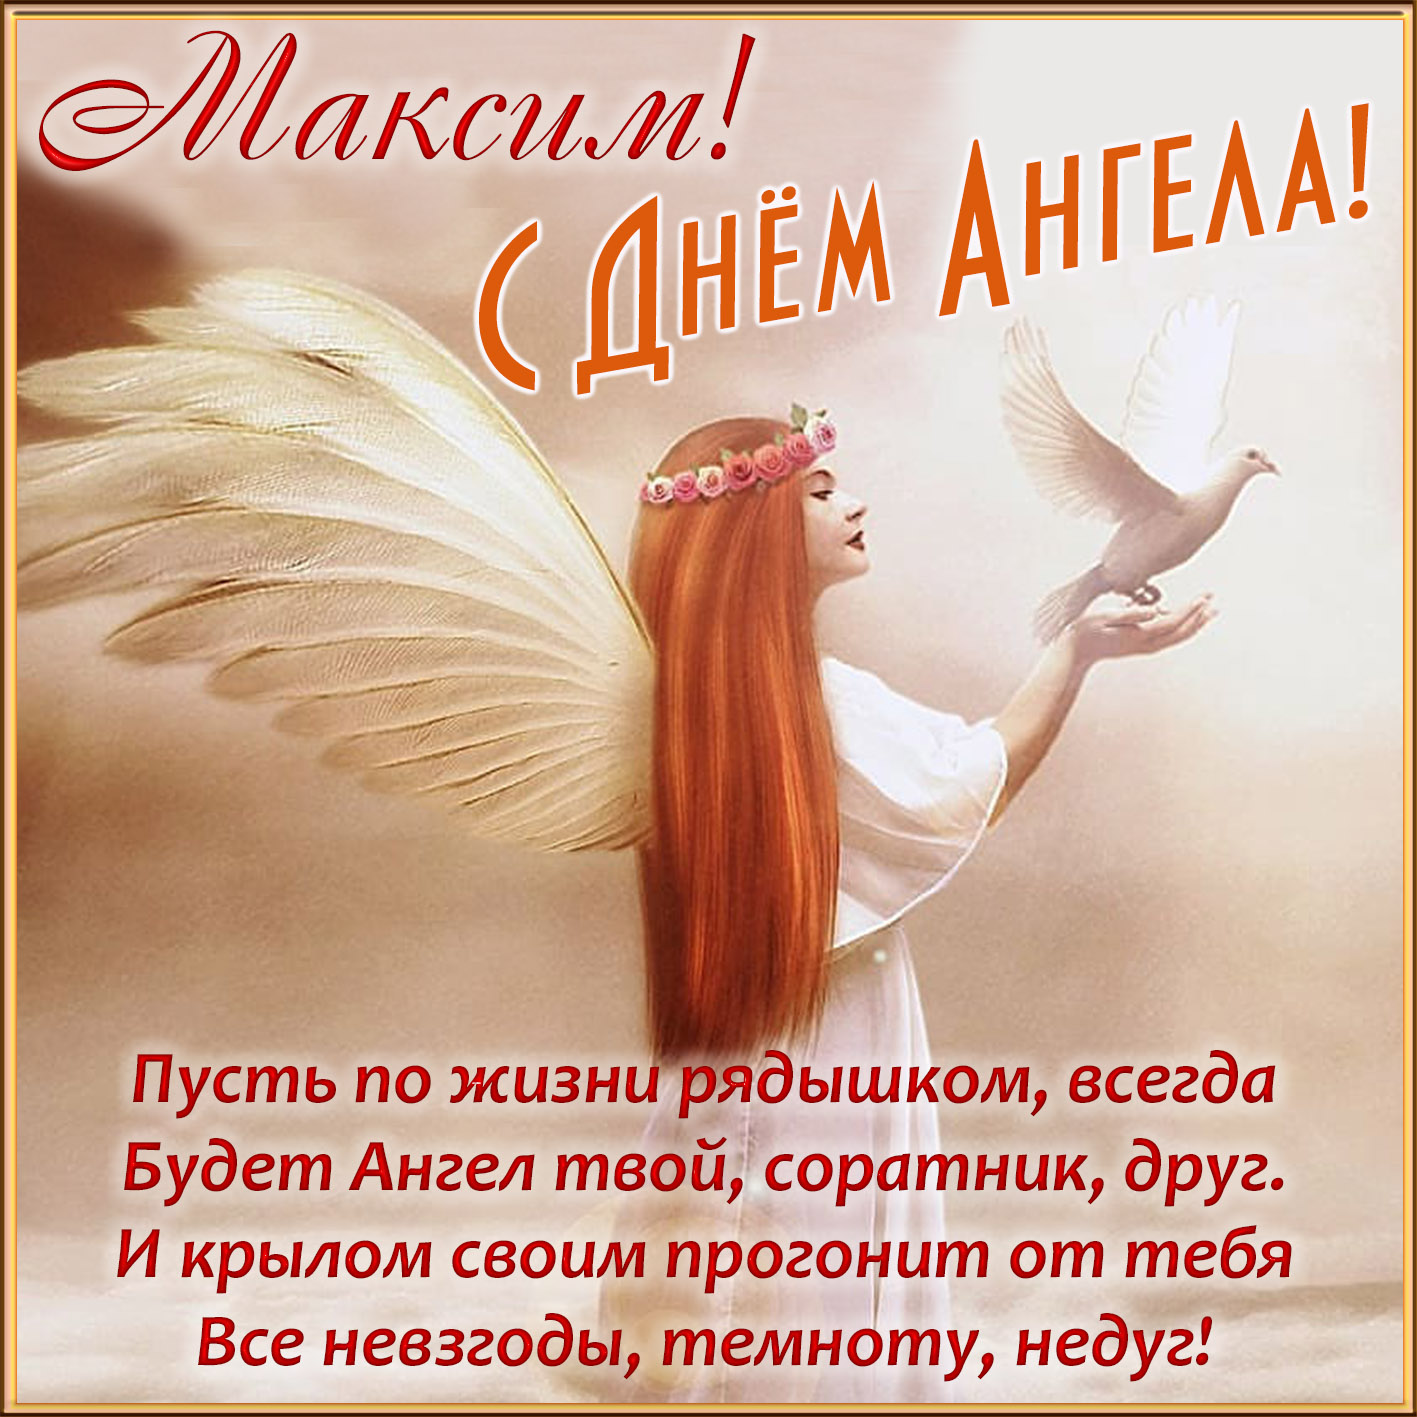 Открытка Максиму на День Ангела с поздравлением